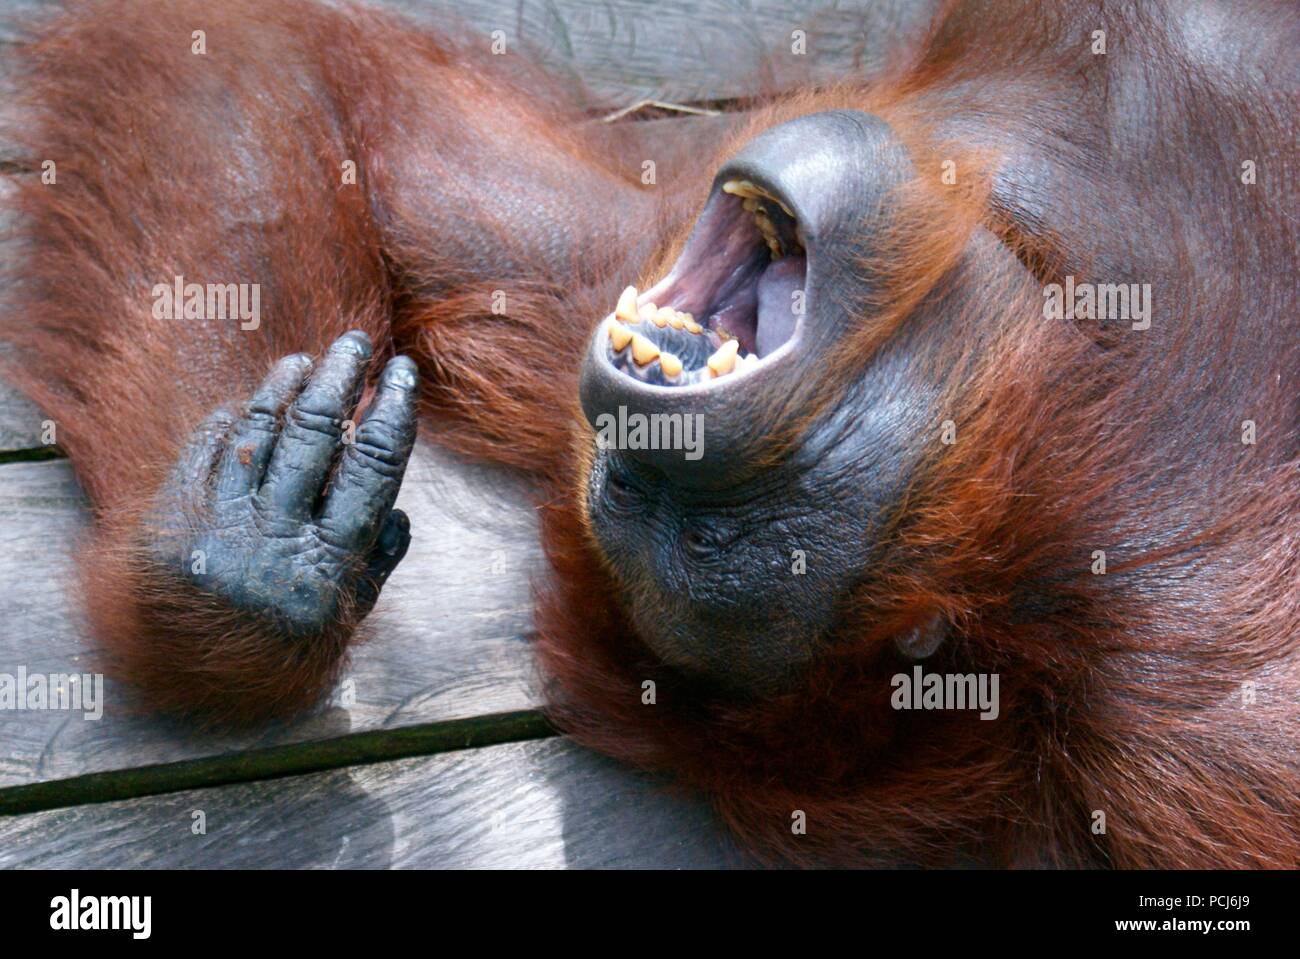 Orang-Utan, Borneo, Indonesia (Pongo pygmaeus), Orang-Utan, Borneo, Indonesien (Pongo pygmaeus) Stock Photo